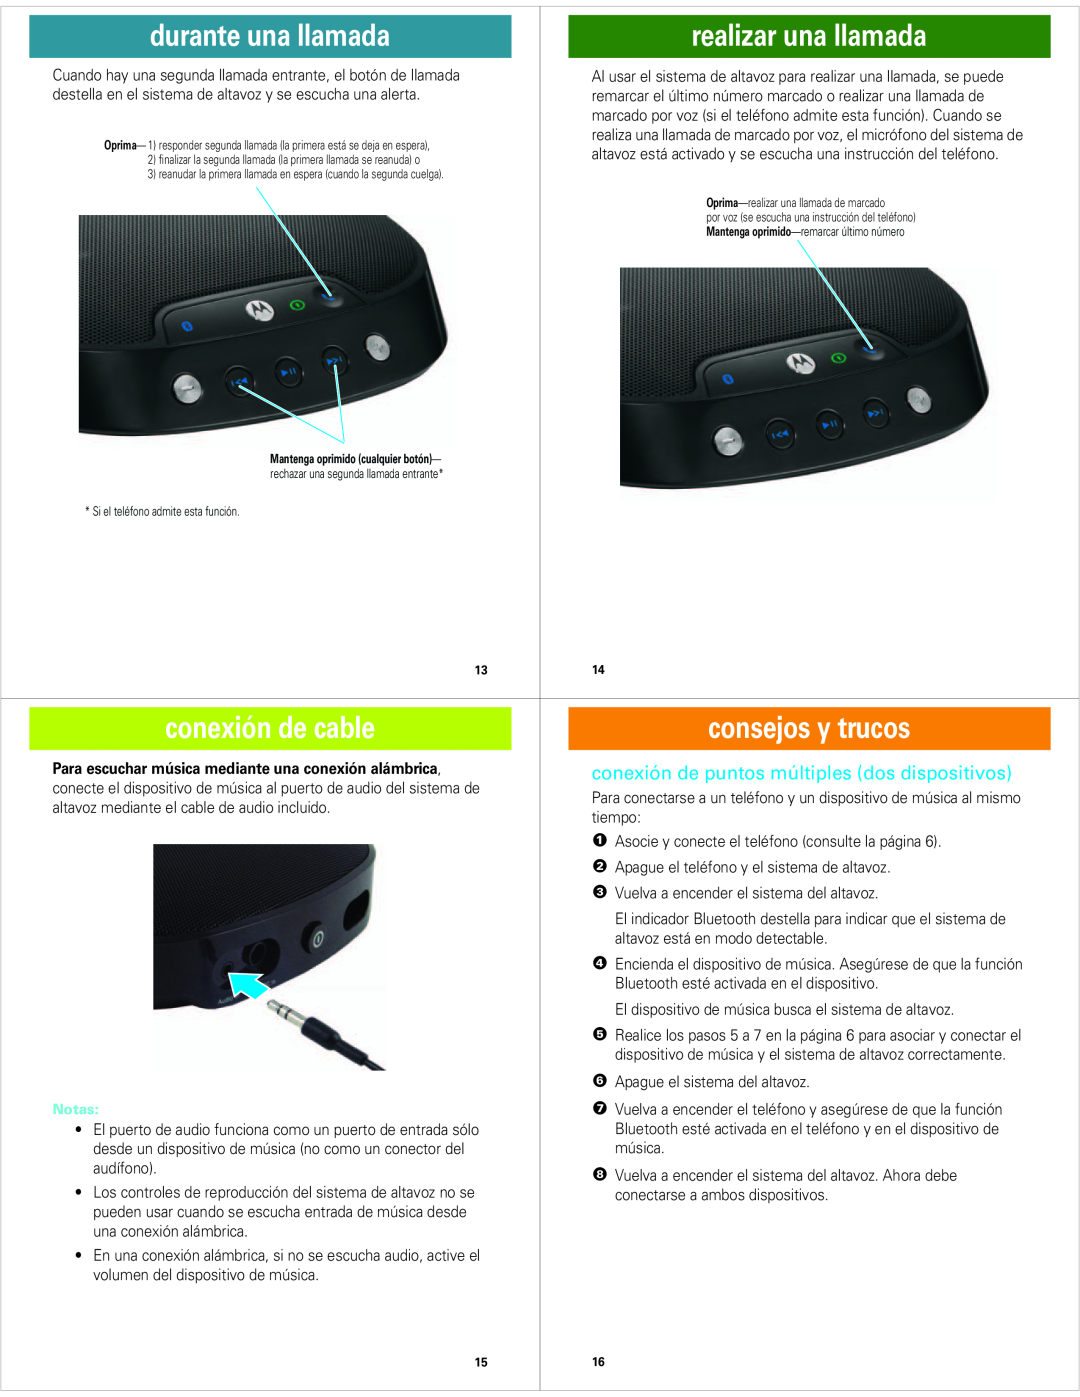 Motorola EQ7 realizar una llamada, conexión de cable, consejos y trucos, conexión de puntos múltiples dos dispositivos 